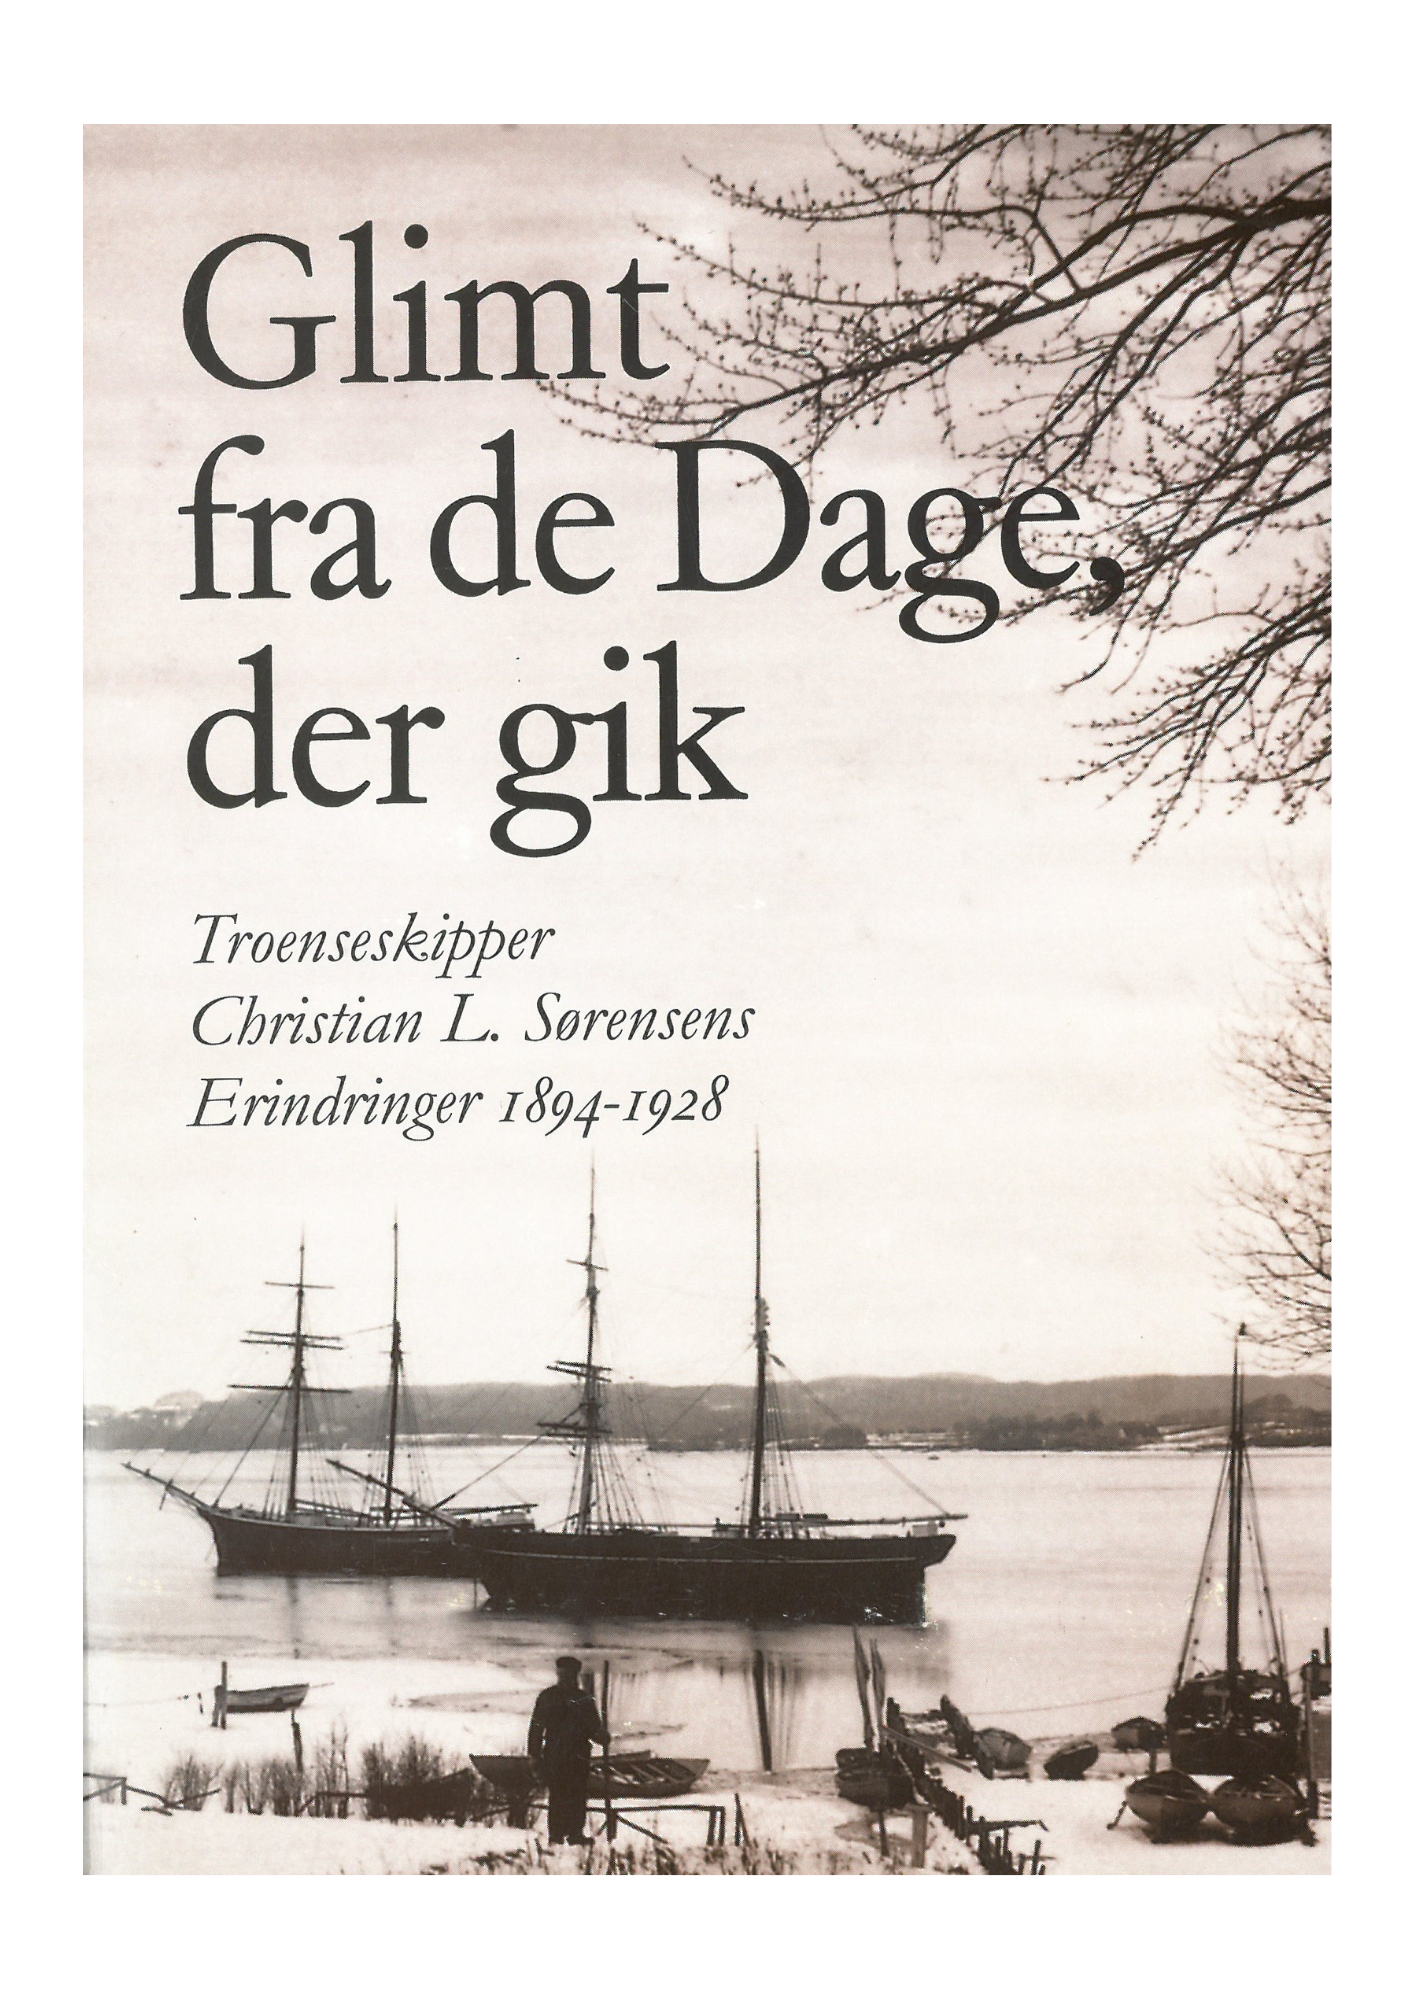 Glimt fra de Dage, der gik - Troenseskipper Christian L. Sørensens Erindringer 1894-1928